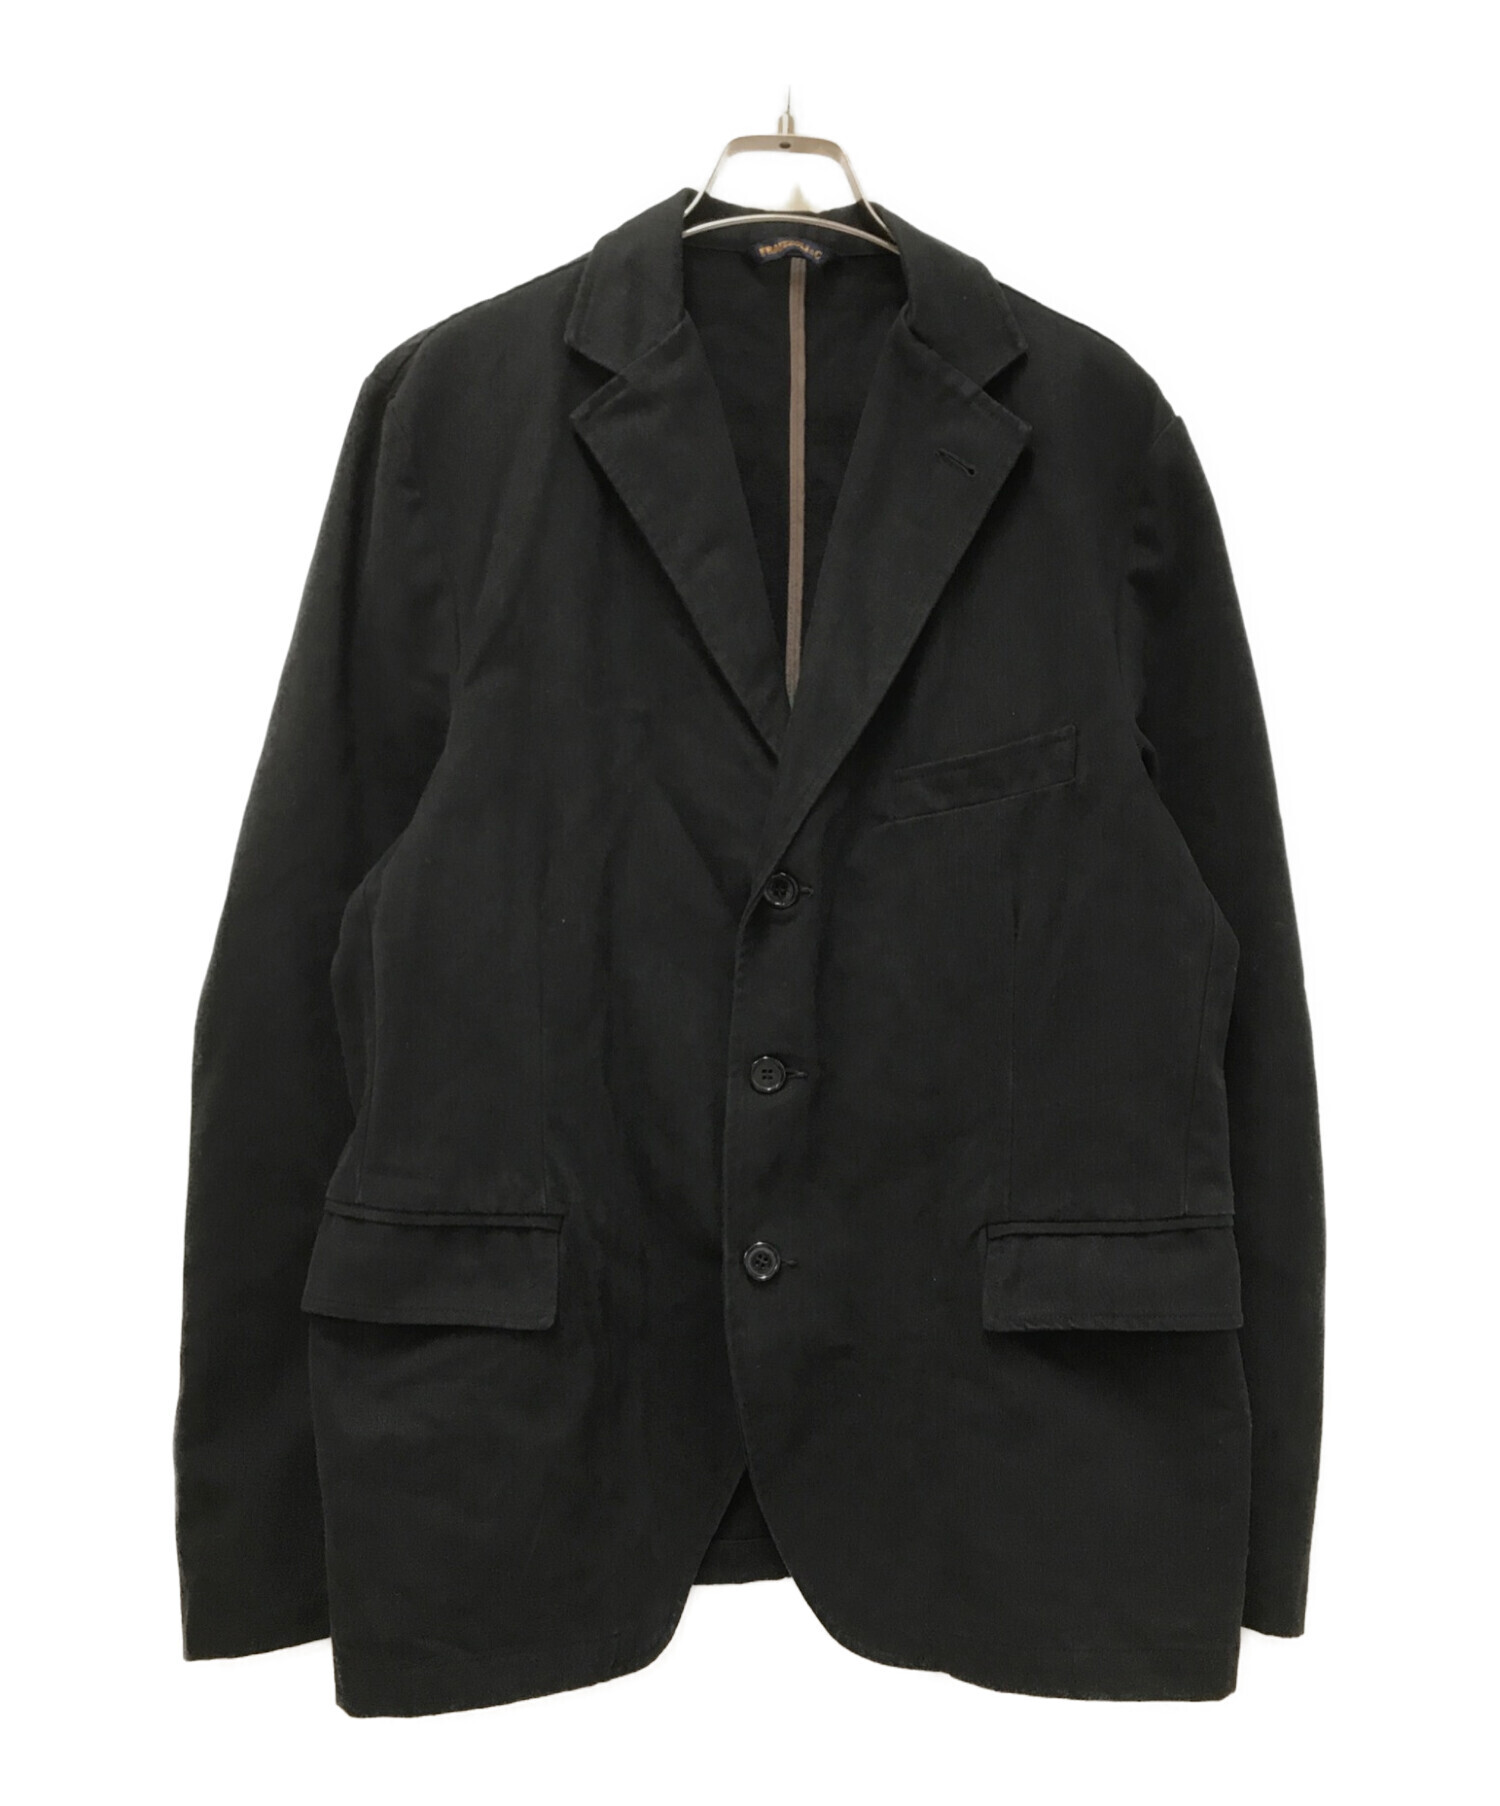 Fraizzoli (フライツォーリ) 3Bテーラードジャケット ブラック サイズ:50